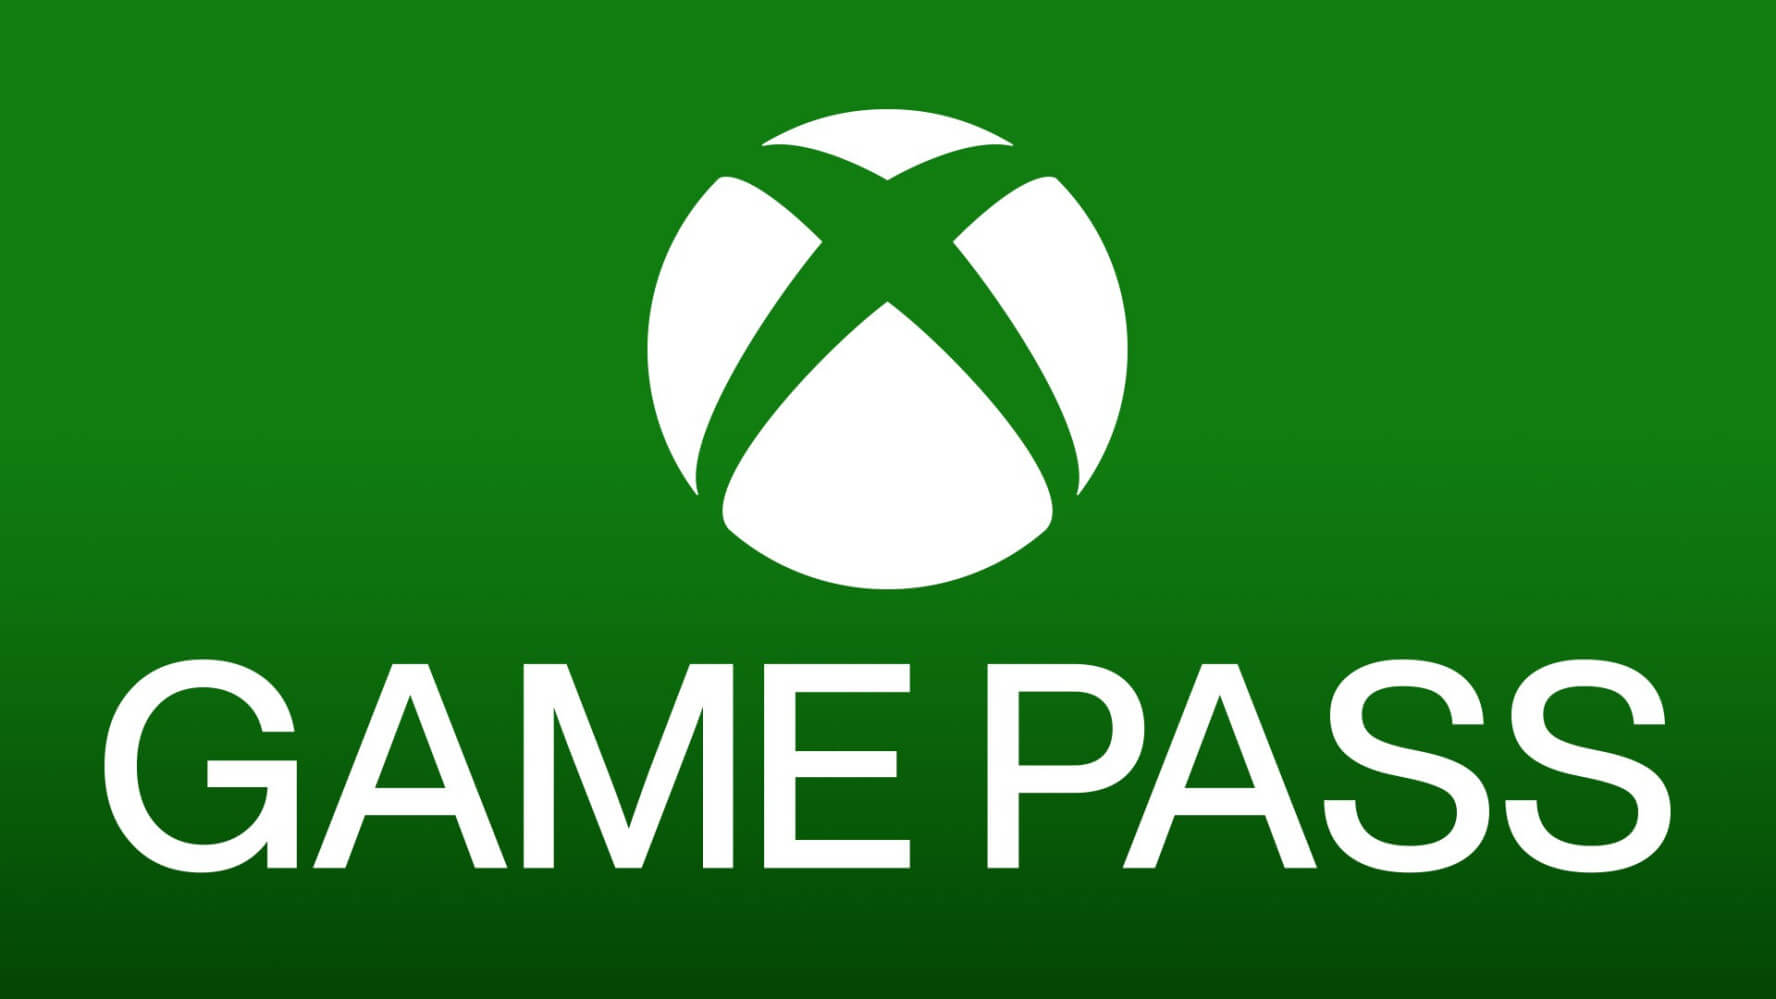 Из-за проблем с Game Pass команда Xbox дарит бесплатно 2 игры The Walking Dead: с сайта NEWXBOXONE.RU